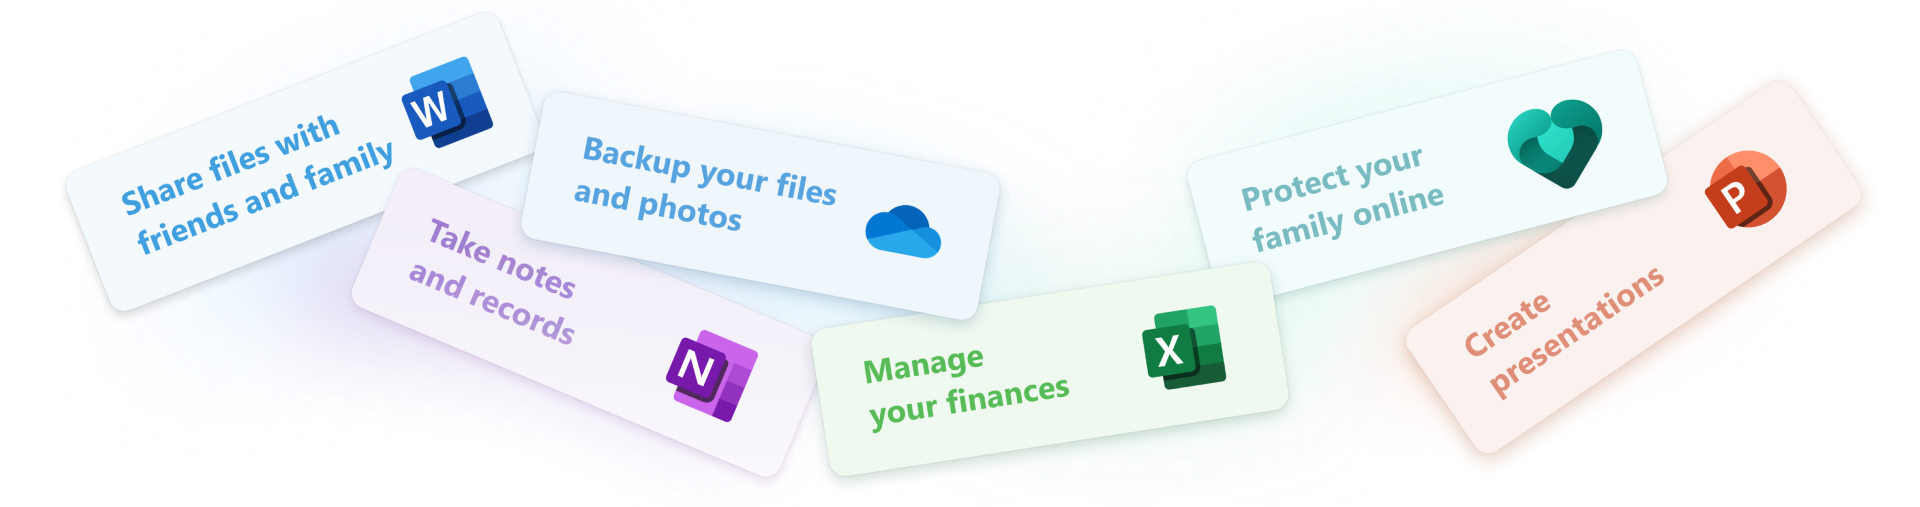 Iconos que representan algunas de las aplicaciones gratuitas disponibles con Office gratis